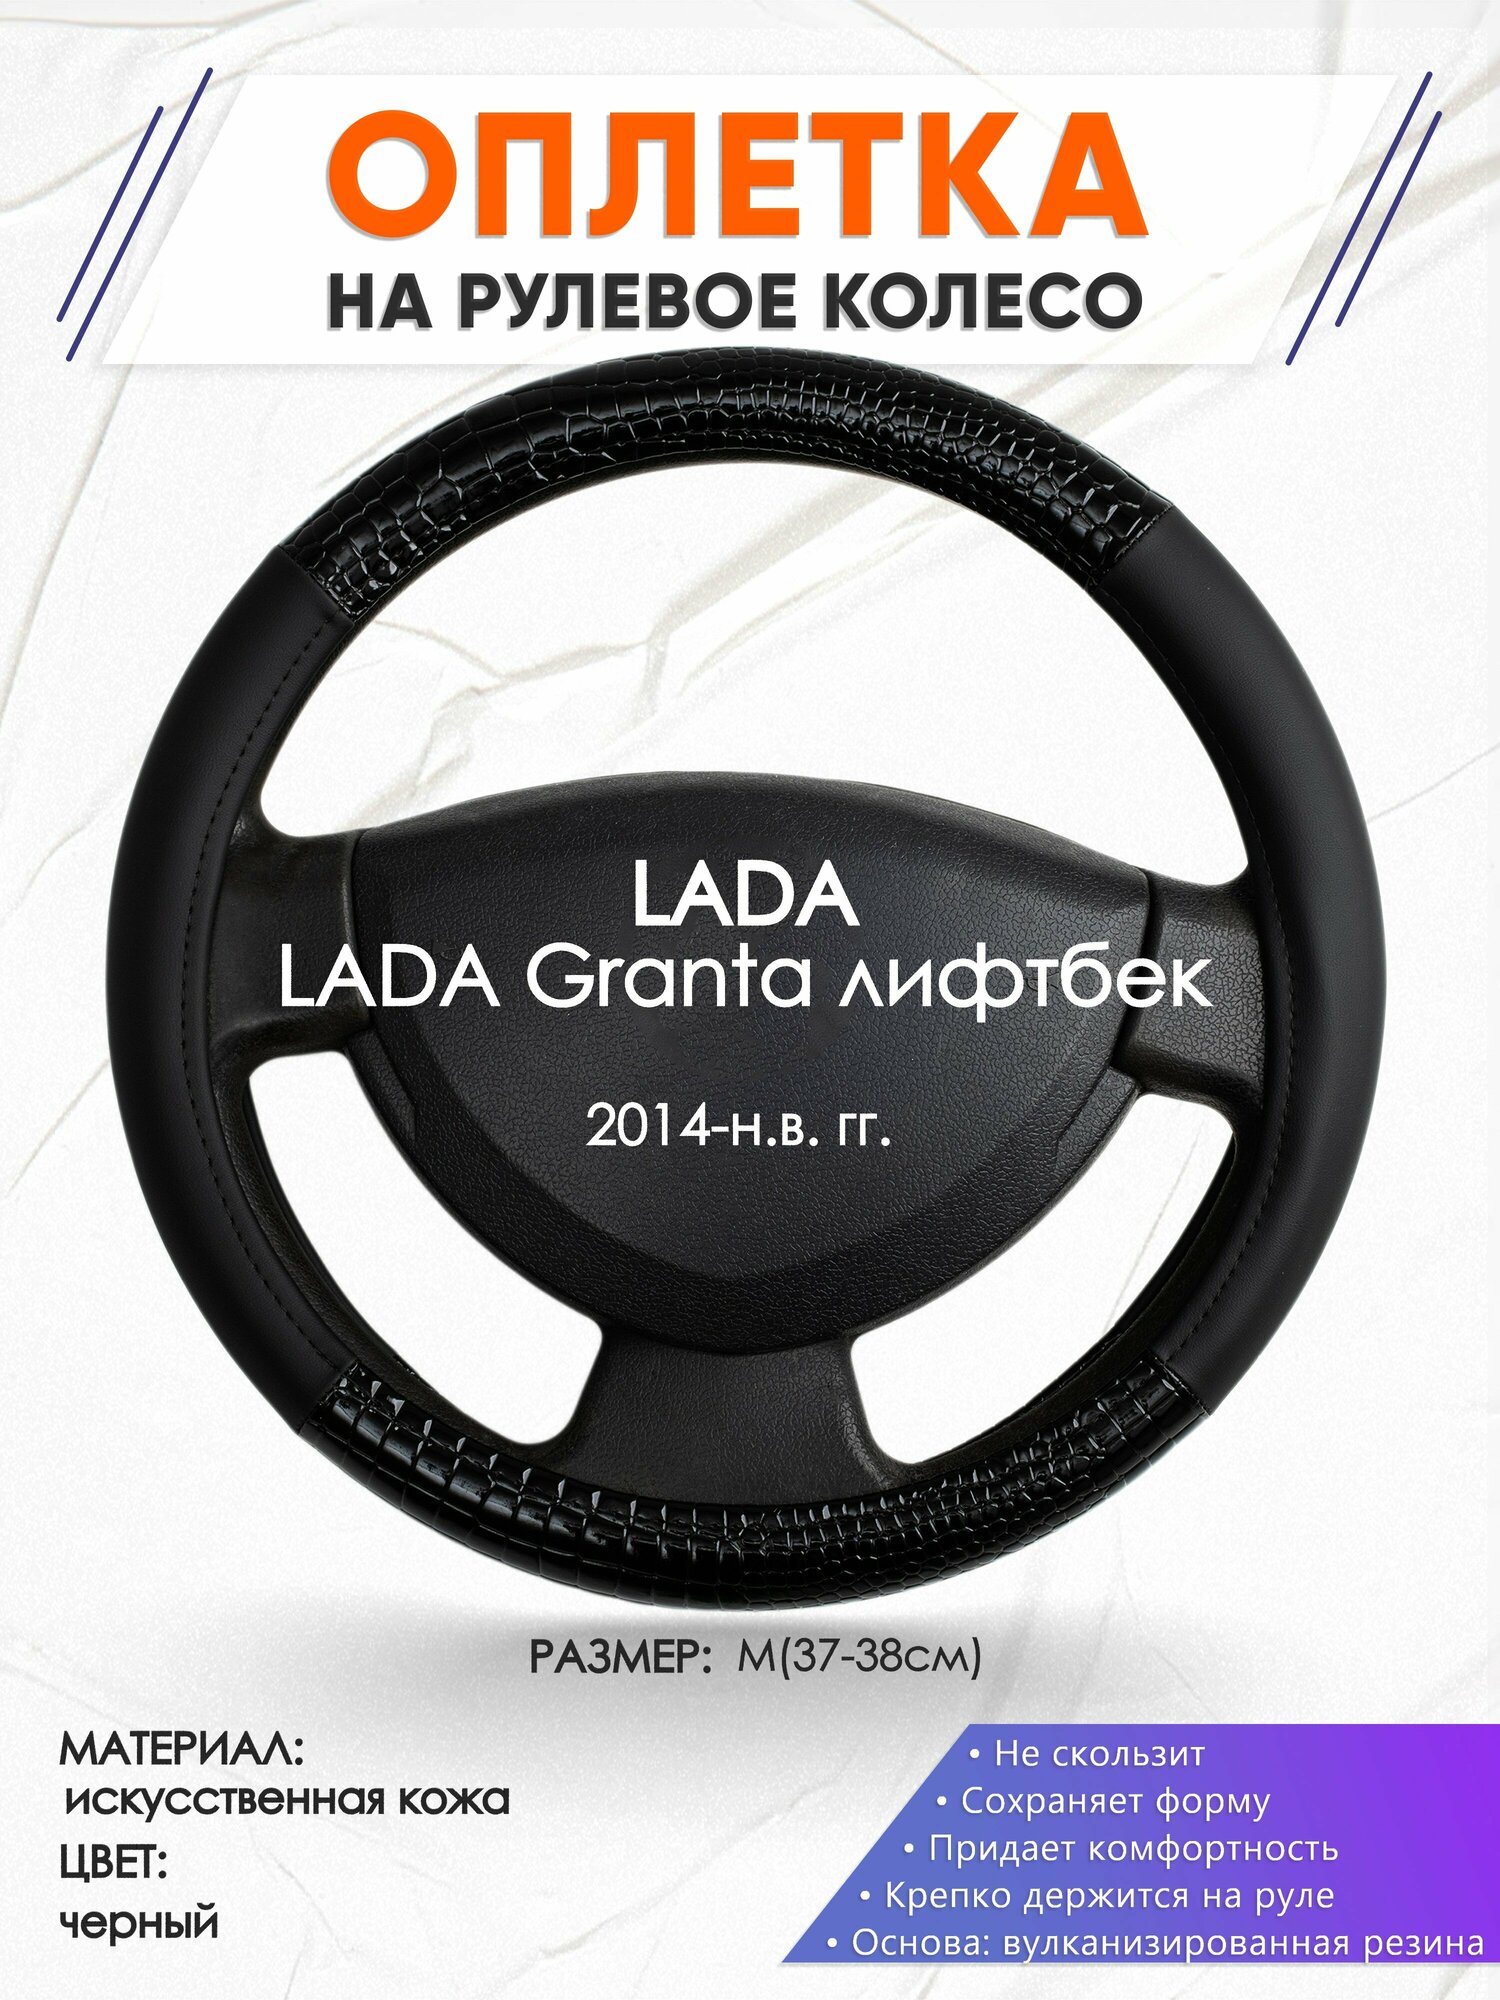 Оплетка наруль для LADA Granta лифтбек(Лада Гранта) 2014-н. в. годов выпуска, размер M(37-38см), Искусственная кожа 83